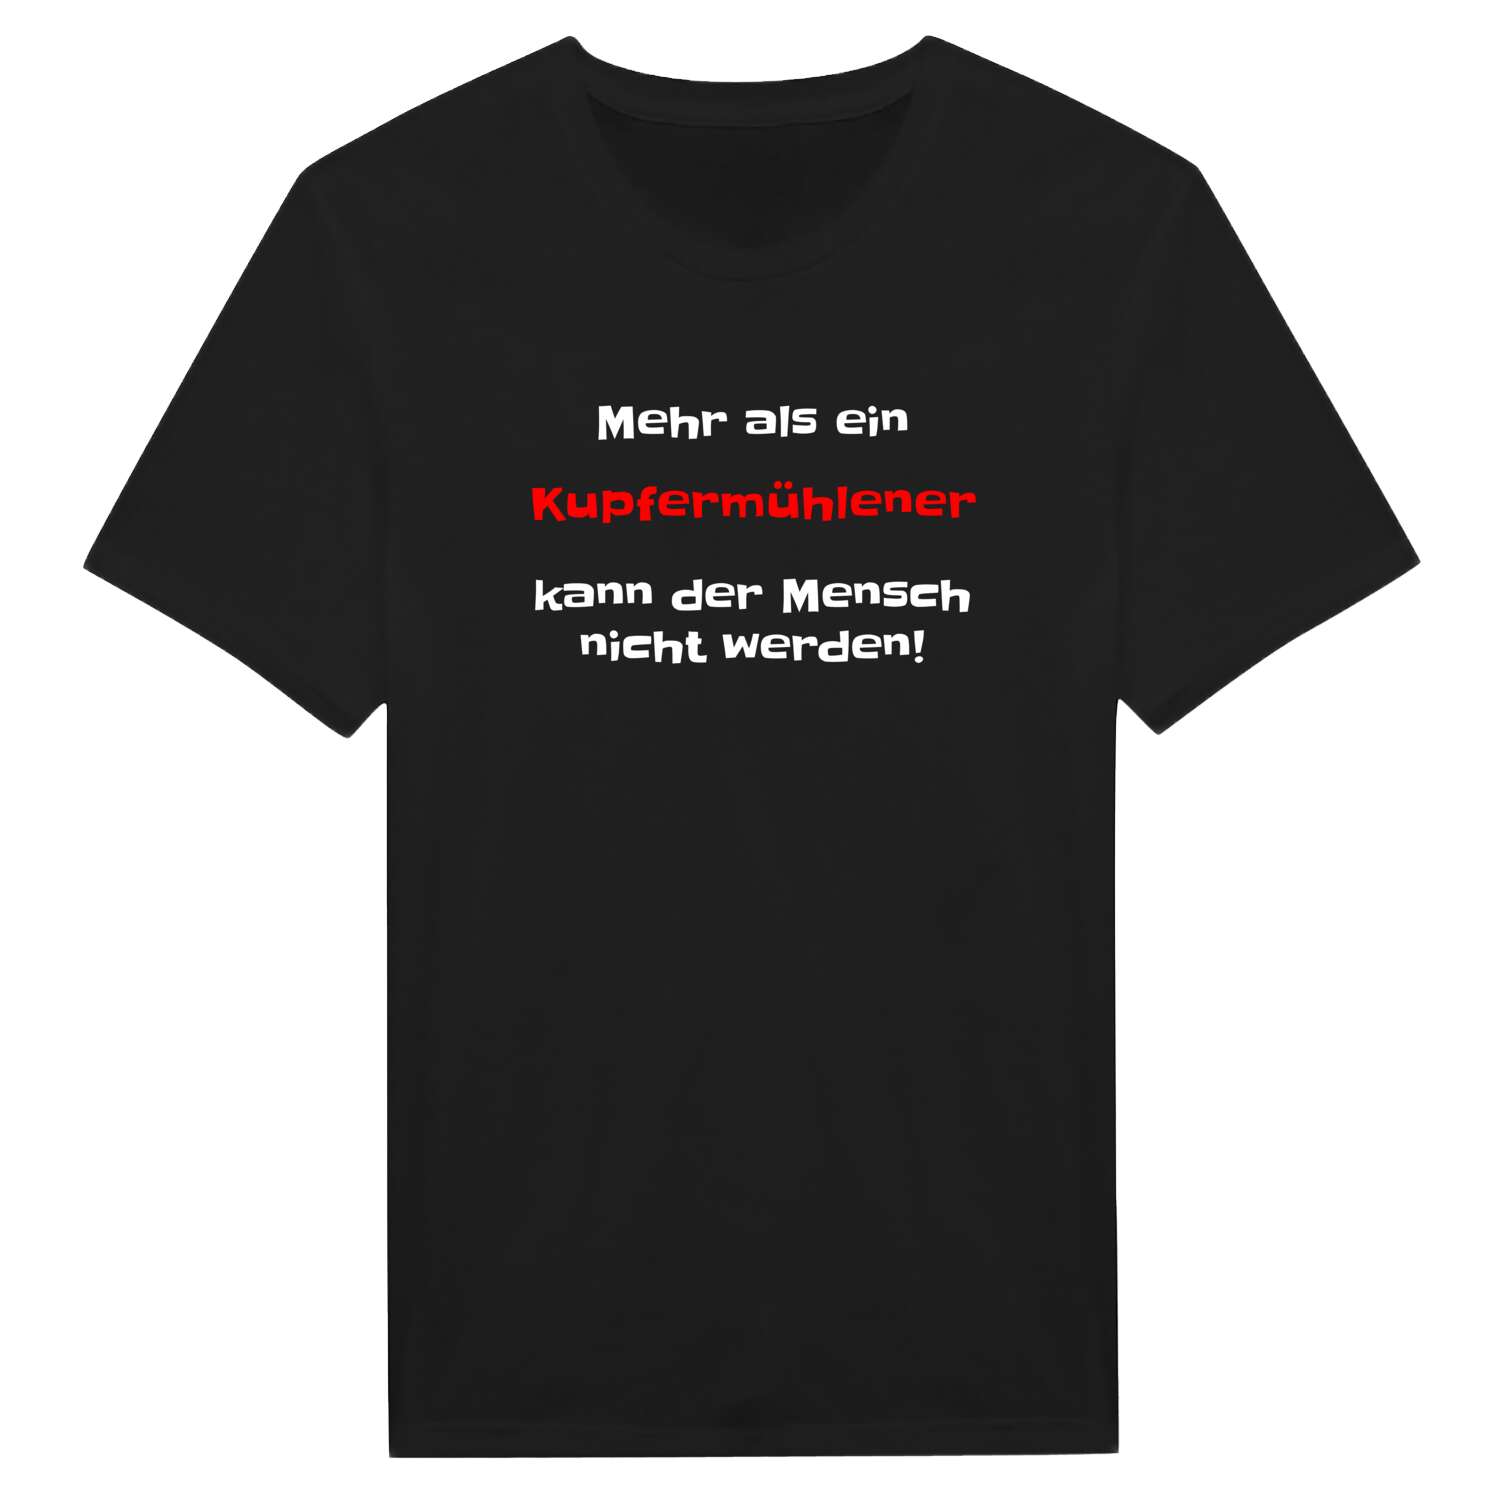 Kupfermühle T-Shirt »Mehr als ein«